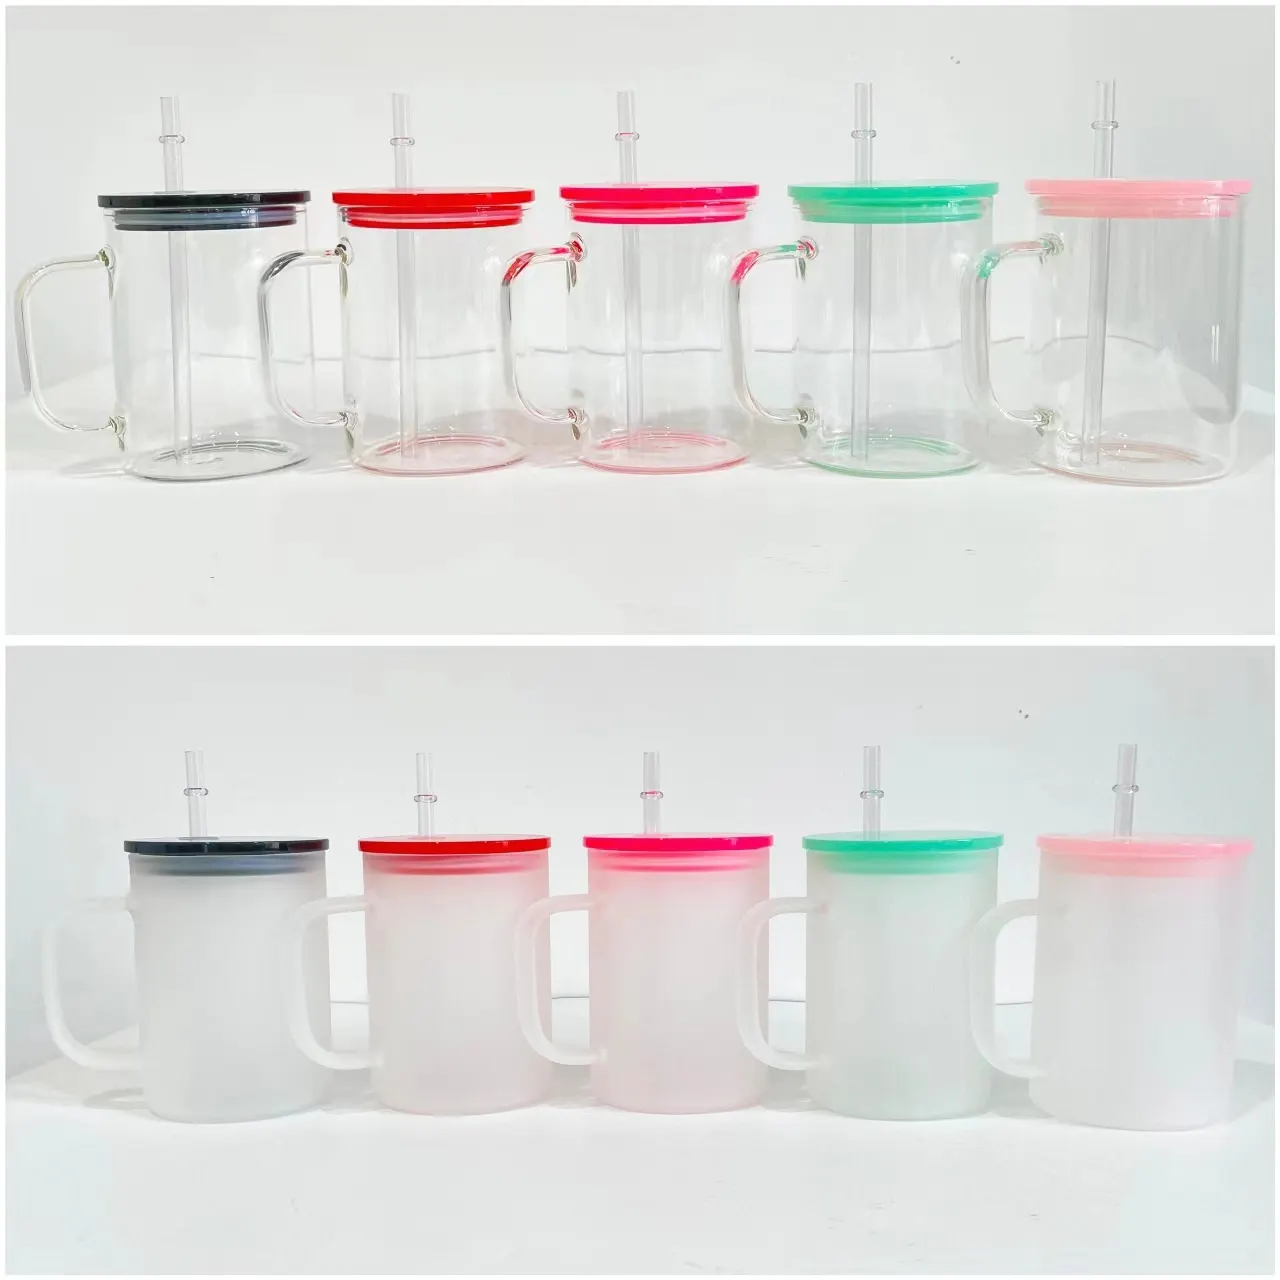 Nueva sublimación en blanco de 17oz, gelatina esmerilada transparente, colores mezclados, tazas de café de vidrio DIY con tapas de plástico de colores para bricolaje